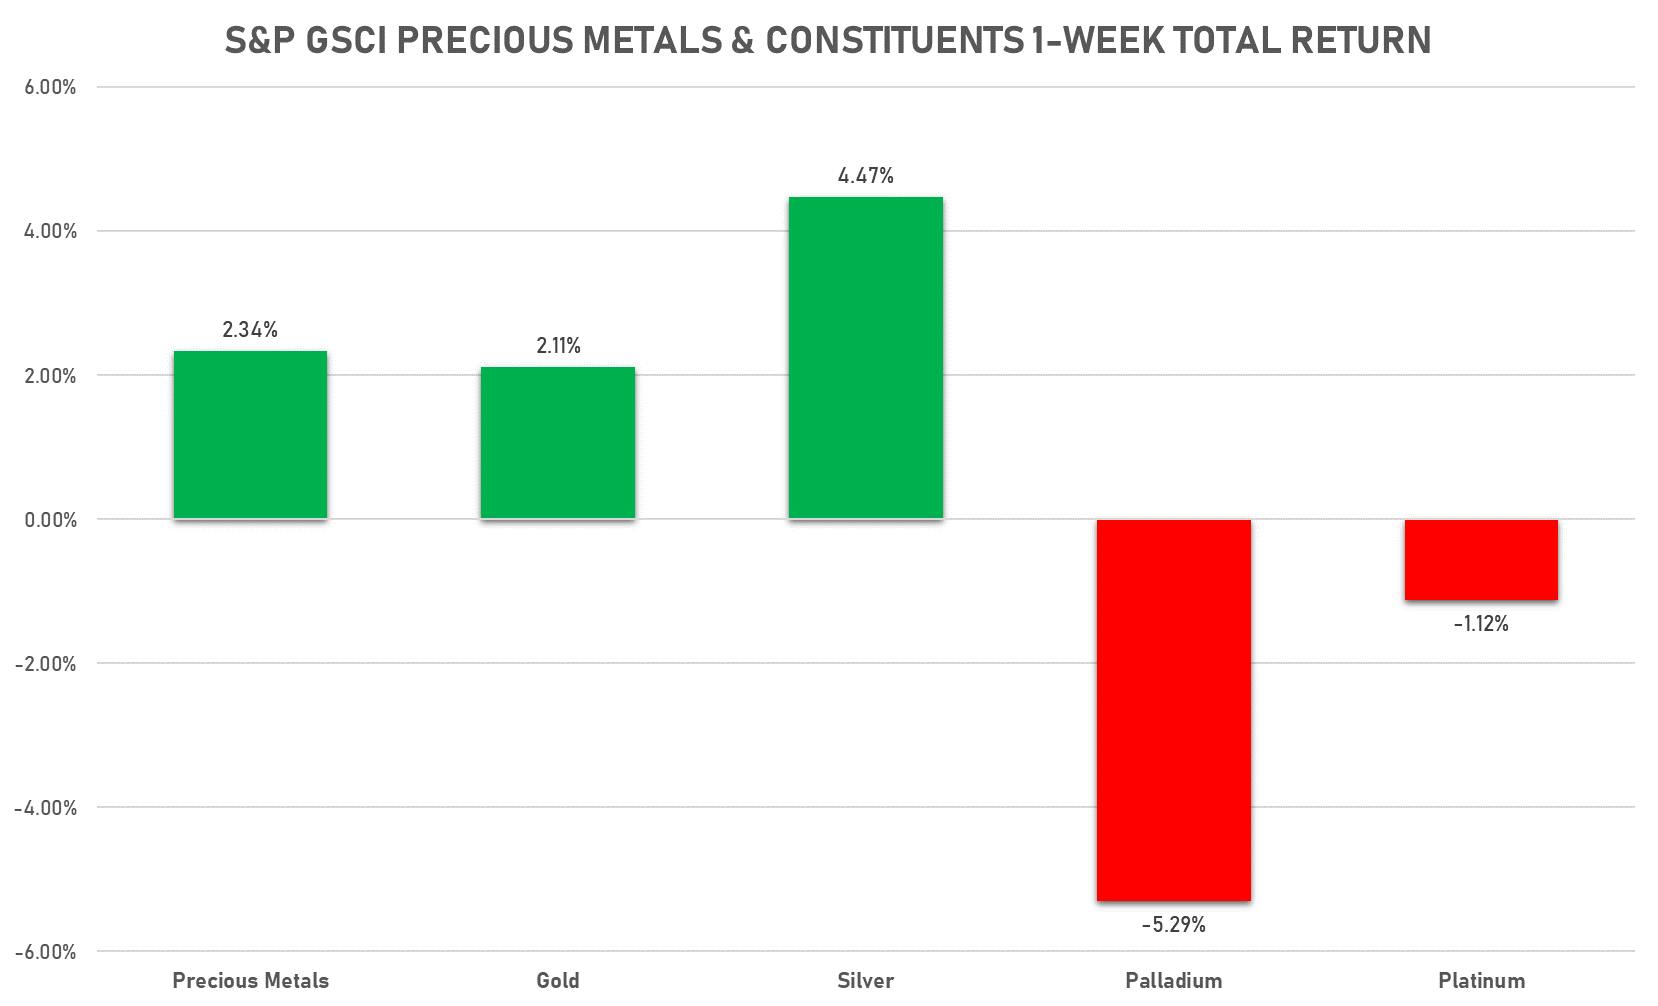 GSCI Precious Metals | Sources: phipost.com, FactSet data